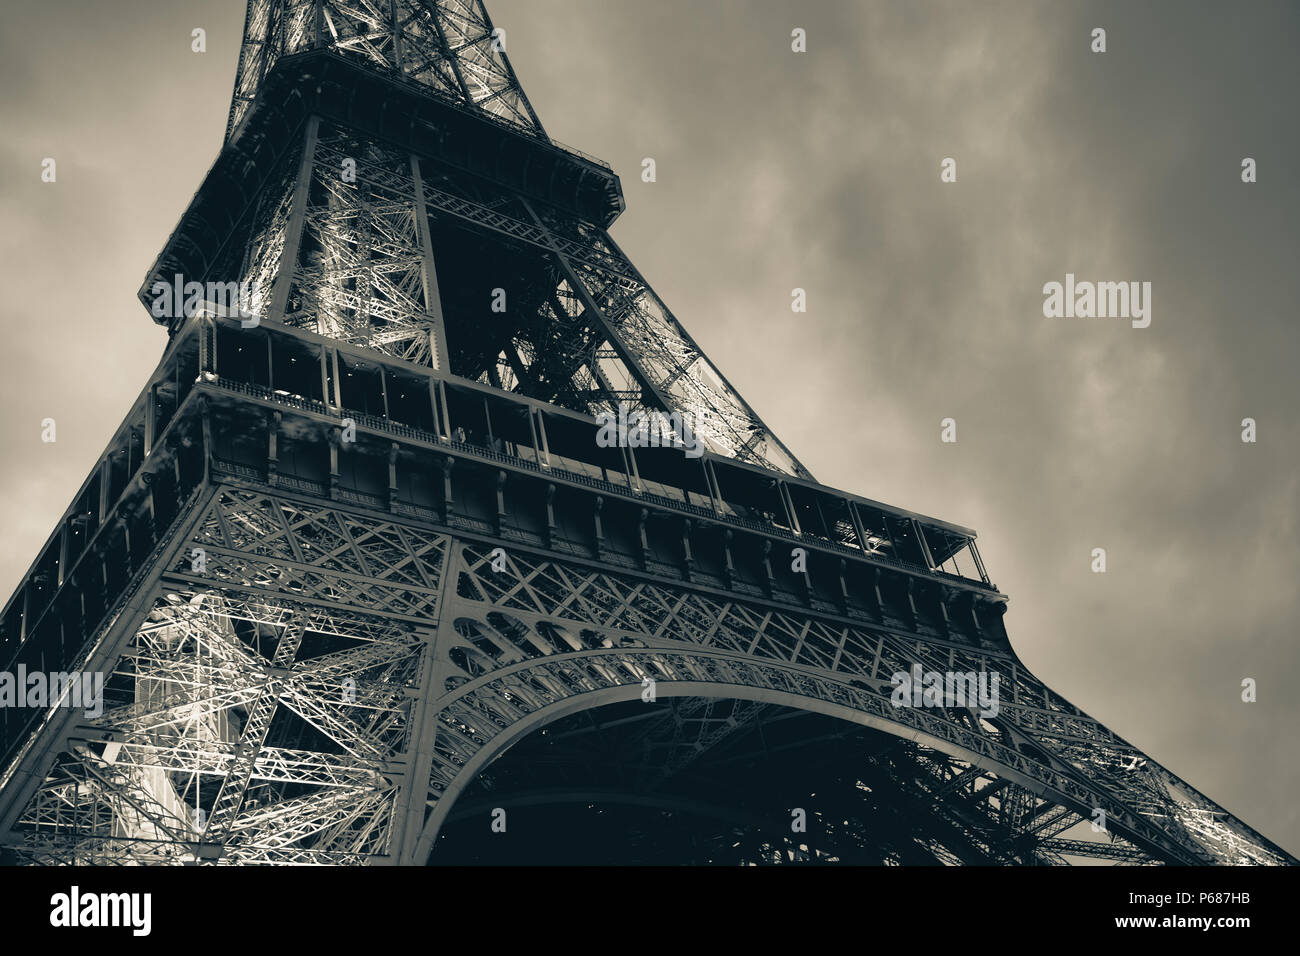 Fragment der Eiffelturm, das populärste Wahrzeichen von Paris, Frankreich. Monochrom blau getönten Foto Stockfoto